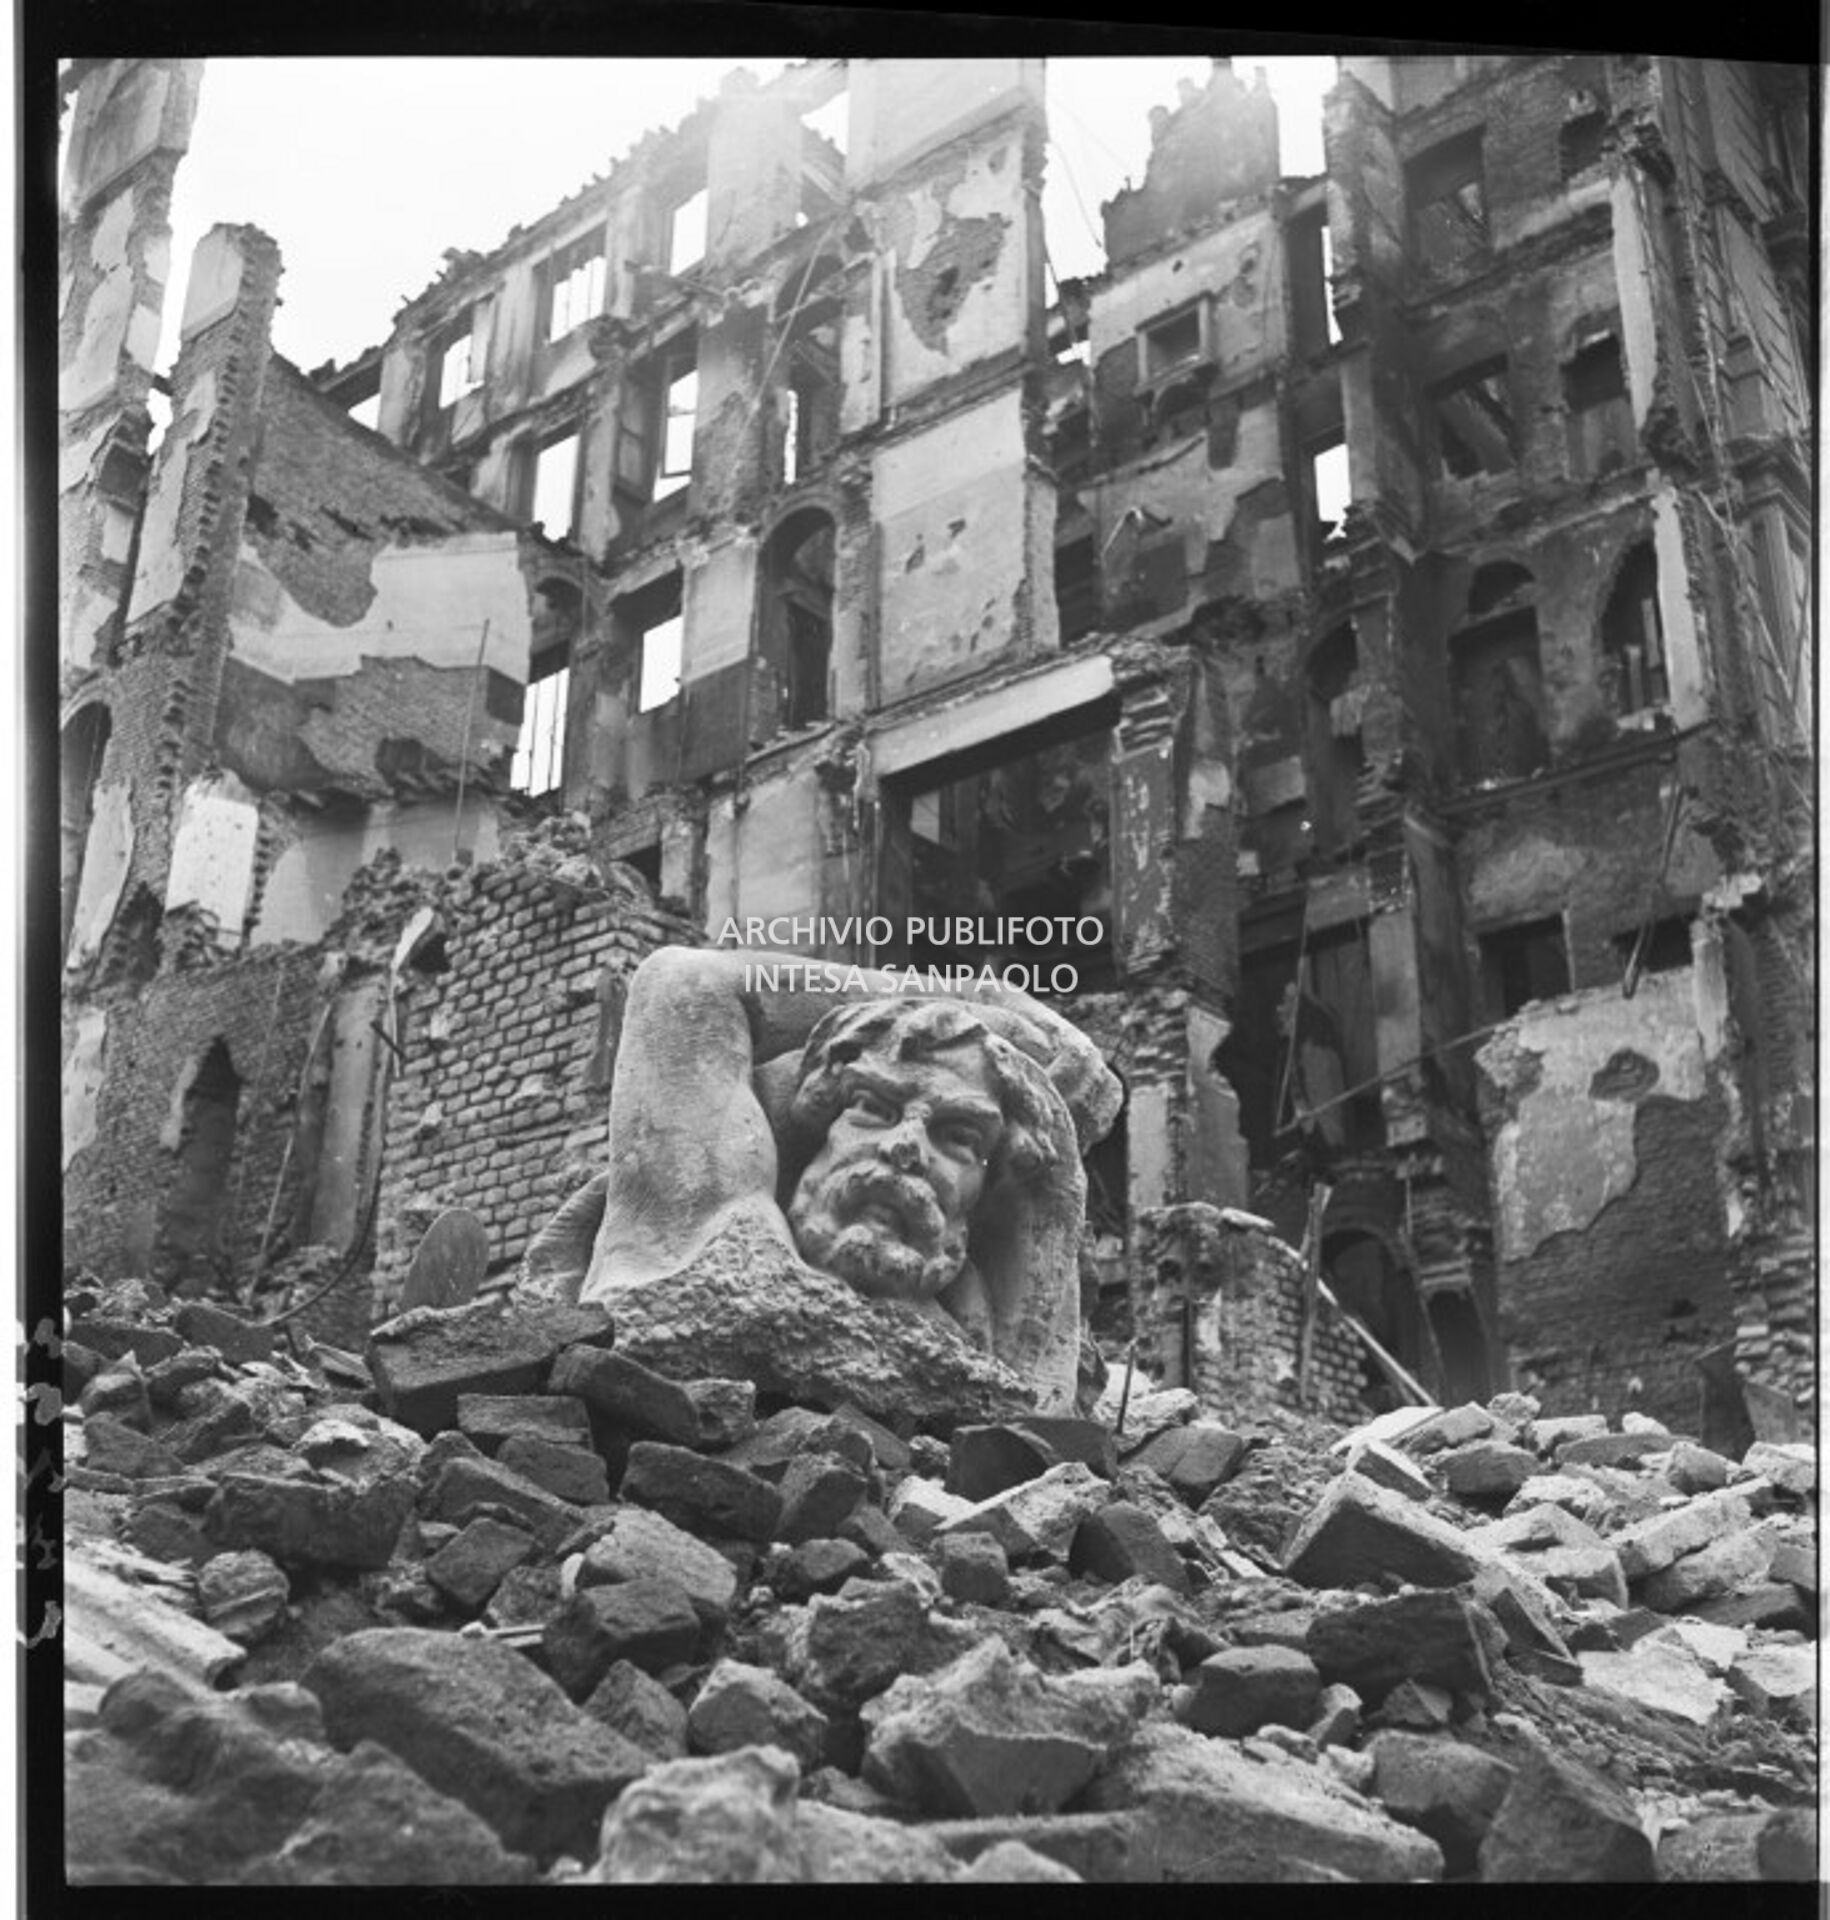 La testa di un telamone giace su un cumulo di macerie degli edifici sventrati dai bombardamenti tra via Lecco e via San Gregorio a Milano